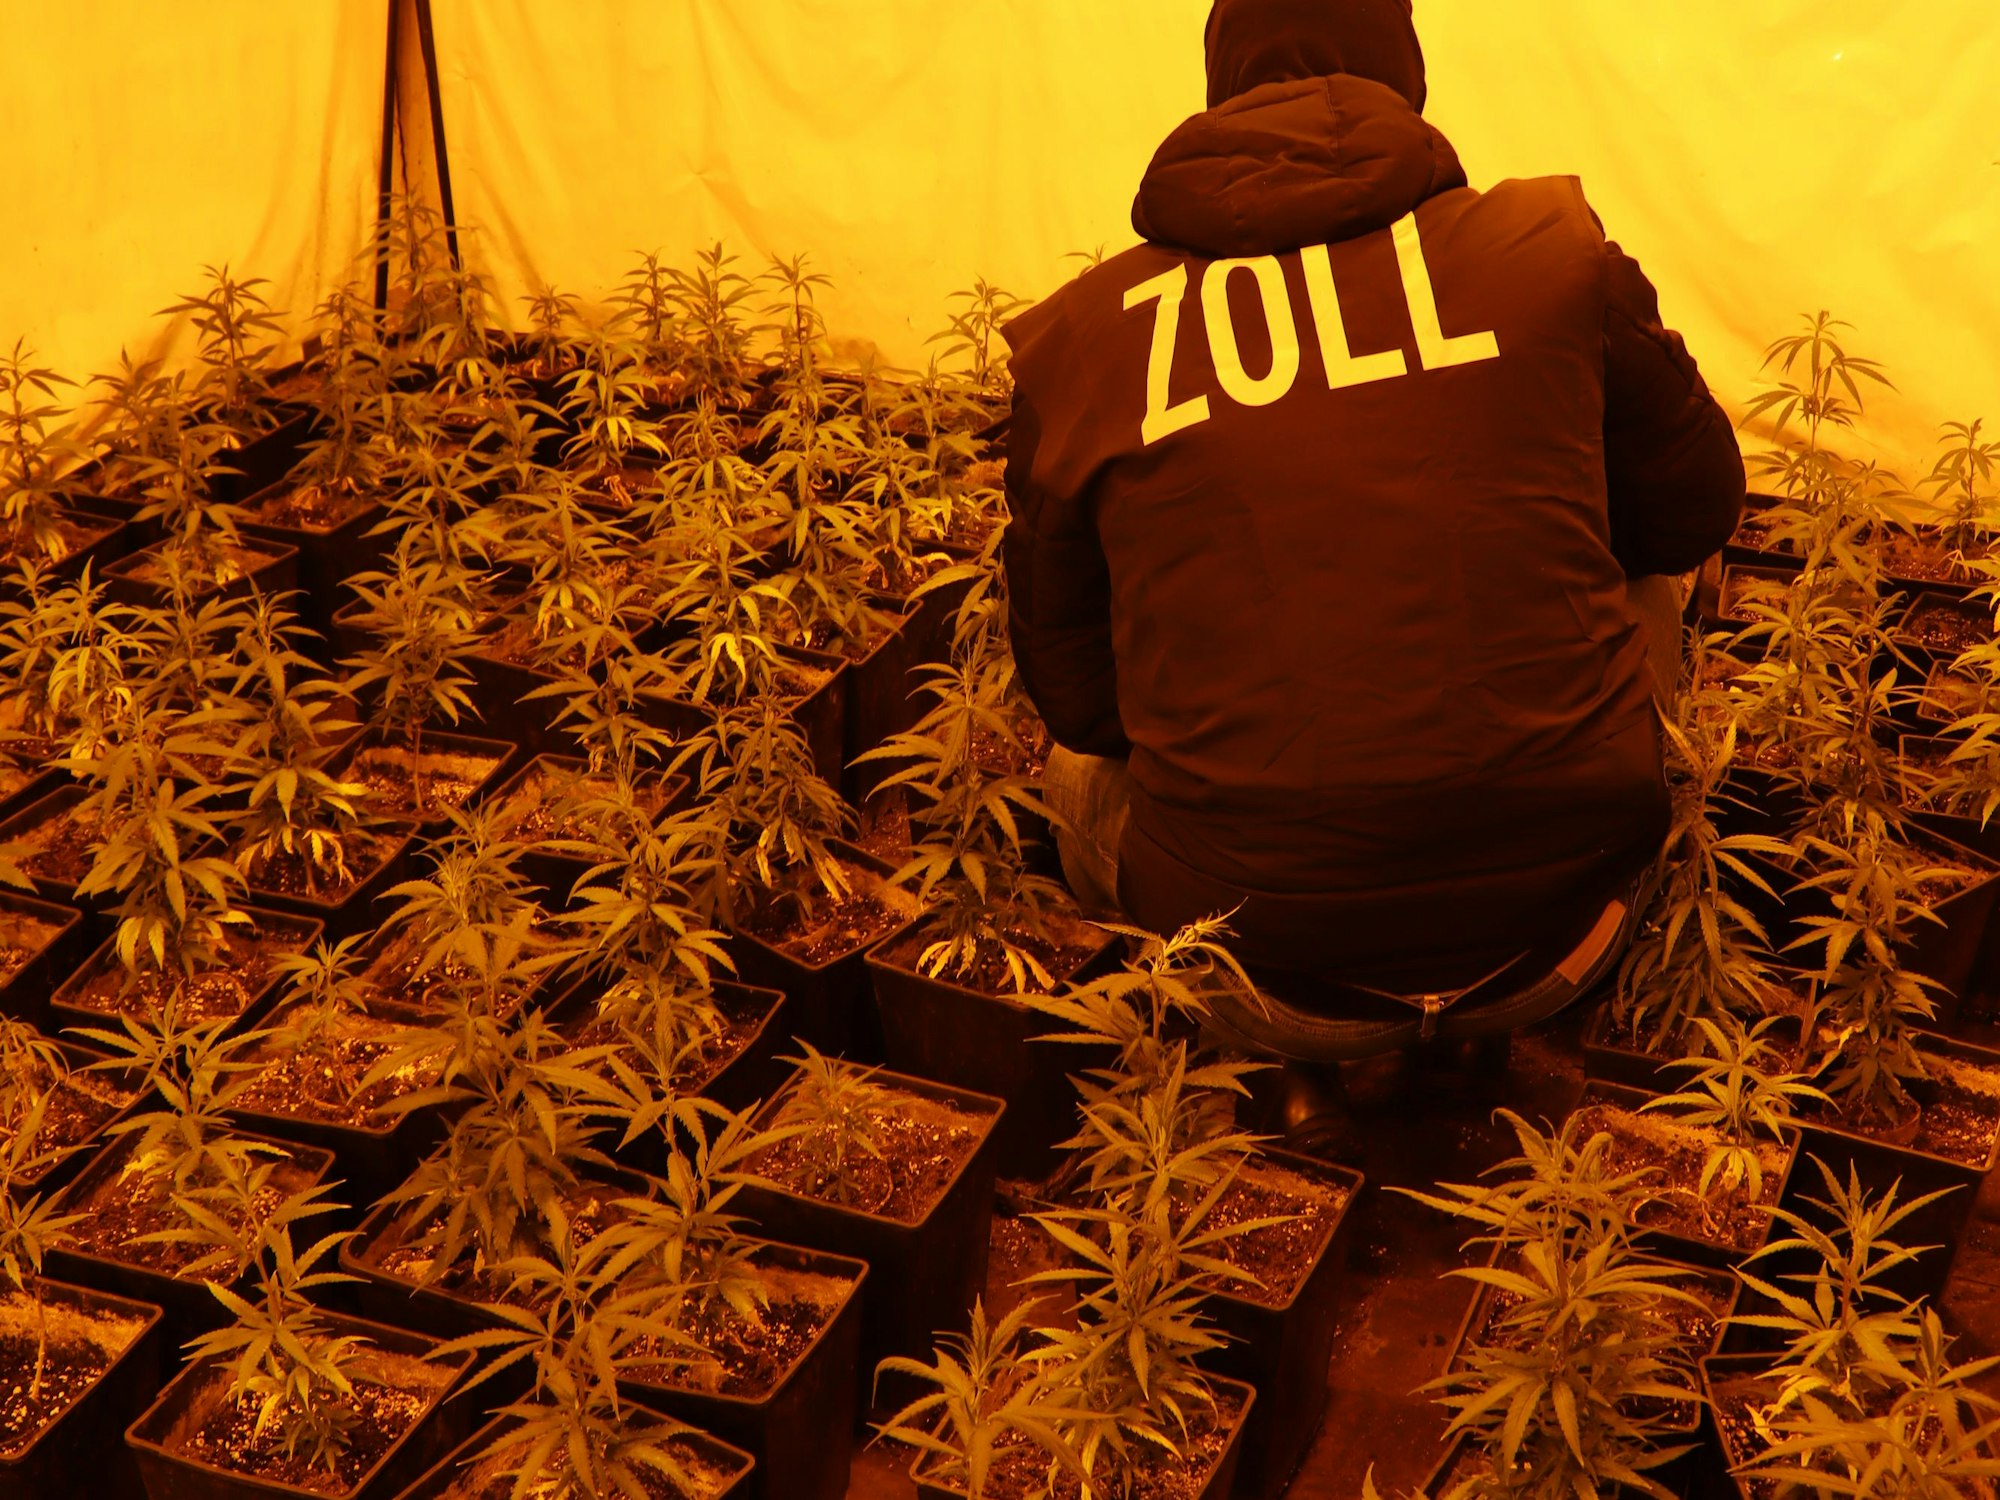 Ein Zollbeamter hockt inmitten Cannabispflanzen.